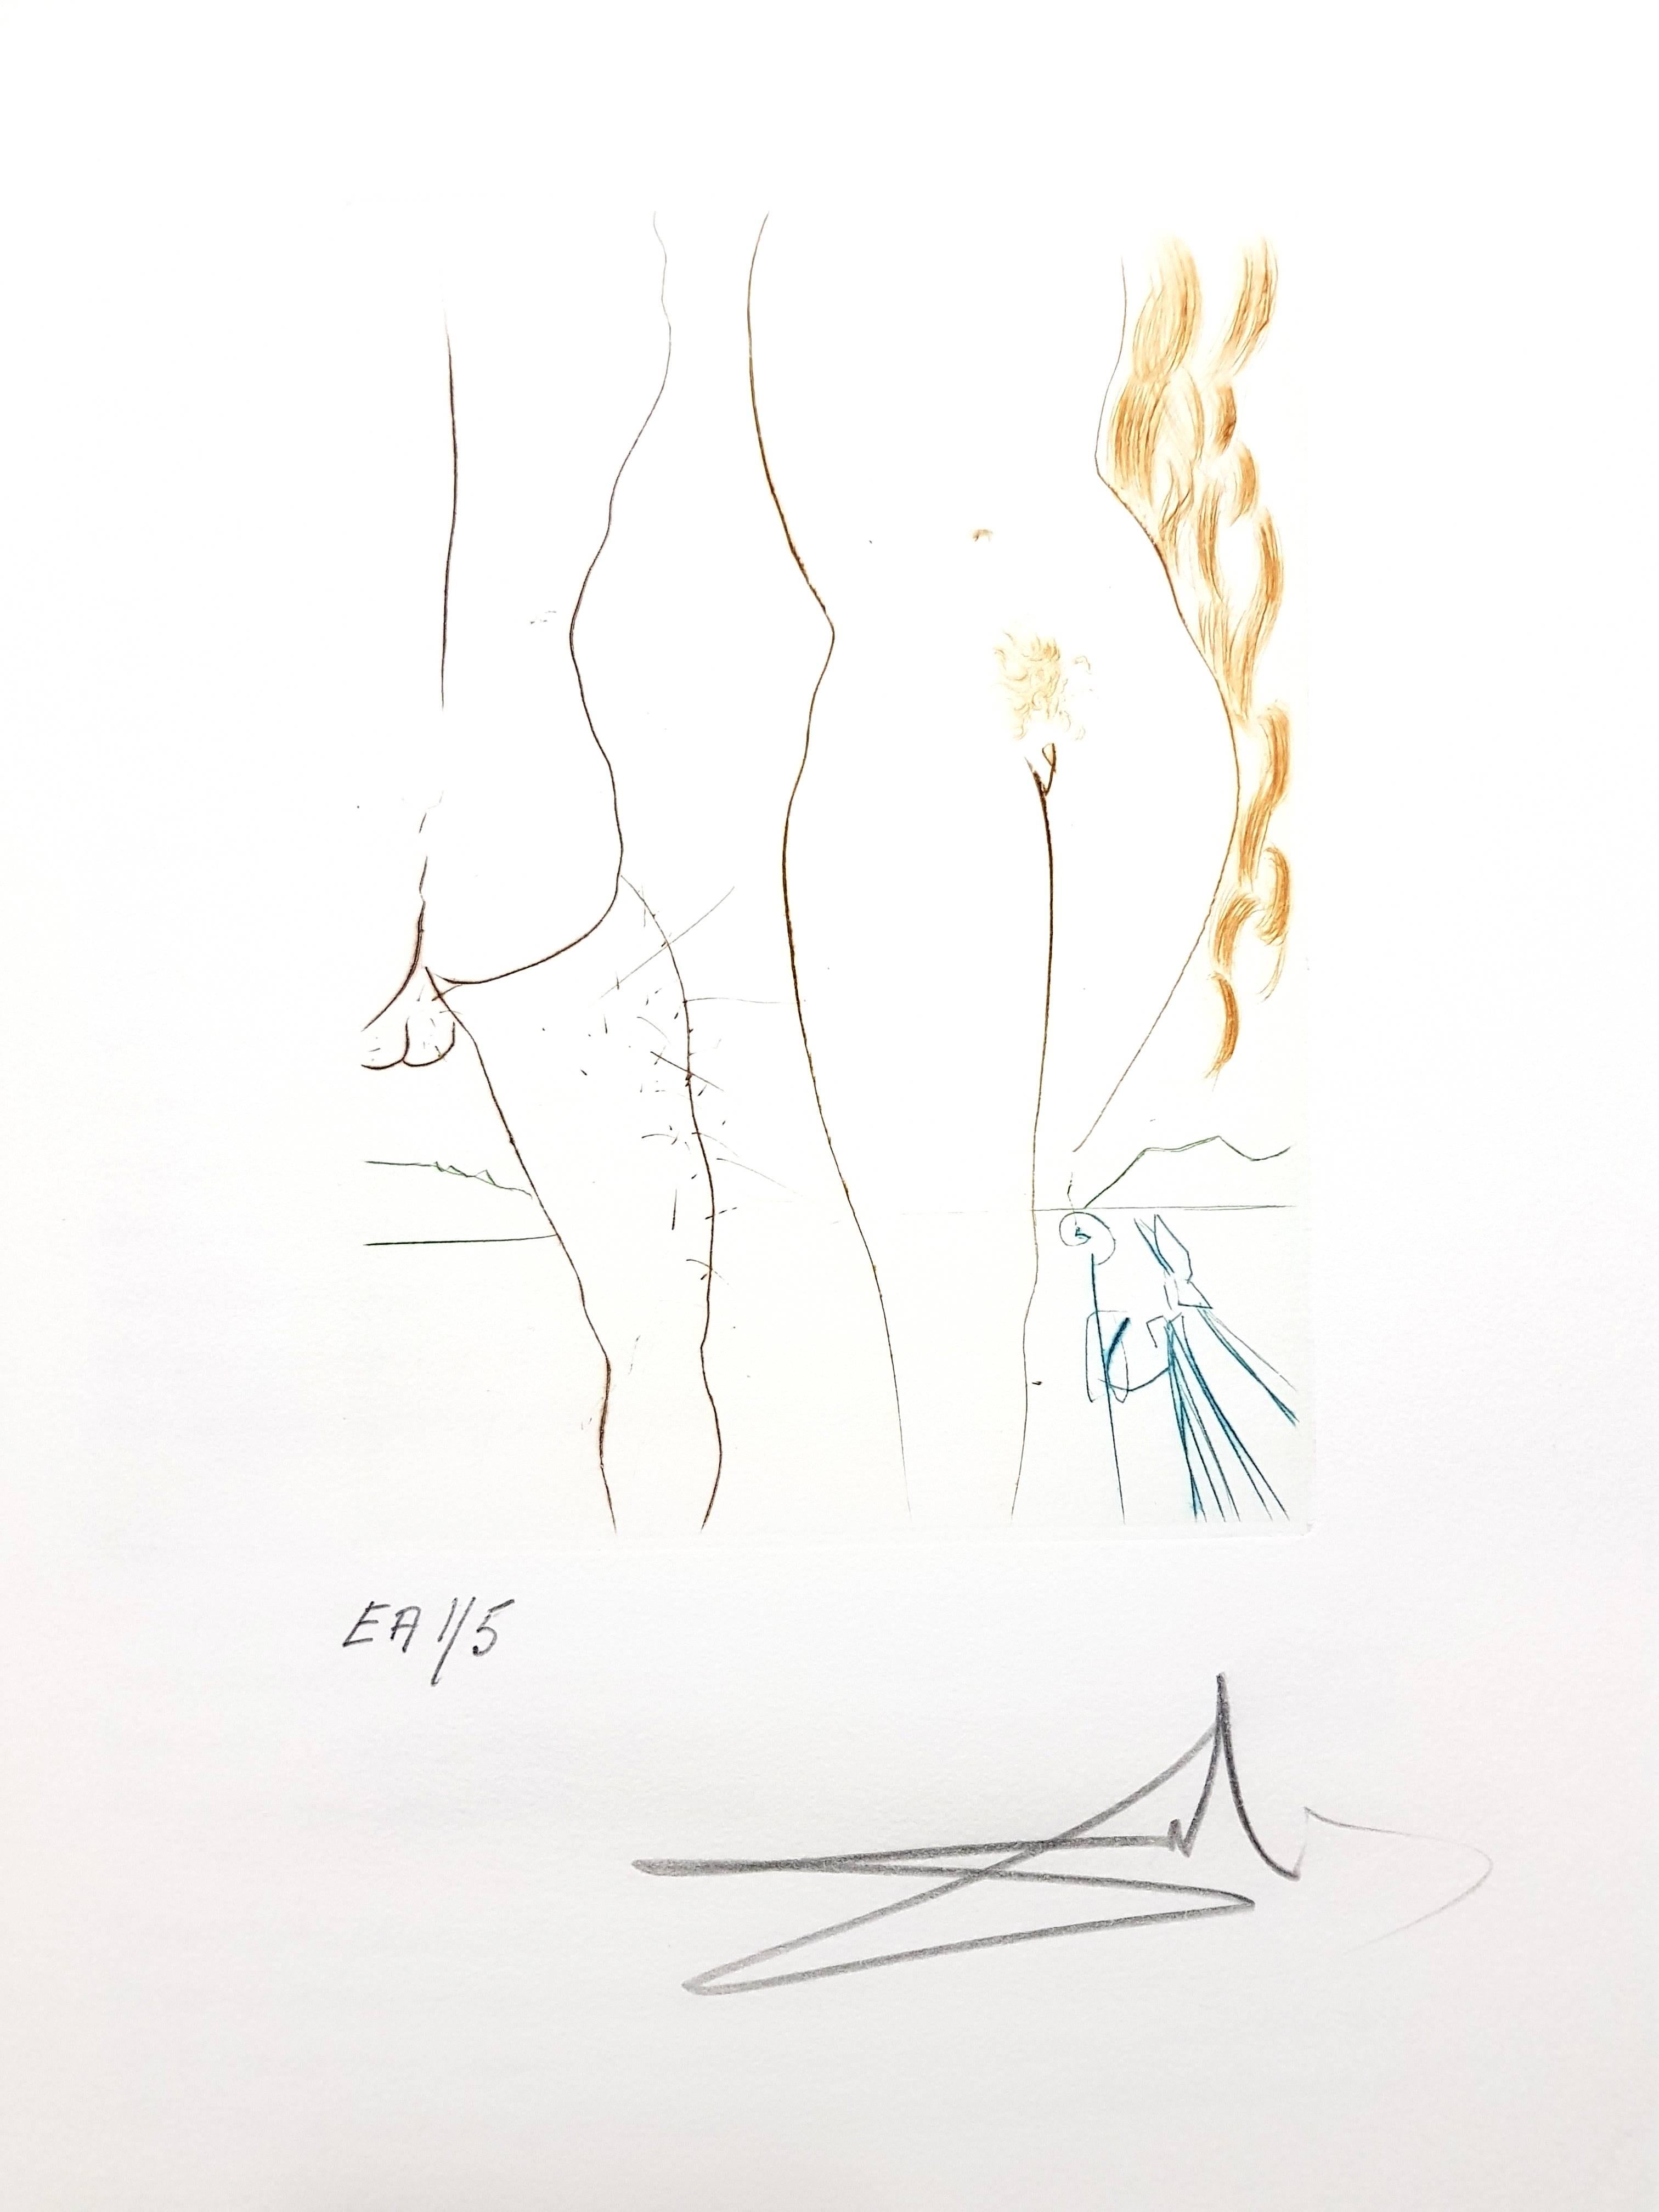 Decameron - Portfolio of 10 Original Signed Engravings by Salvador Dali - Surrealist Print by Salvador Dalí